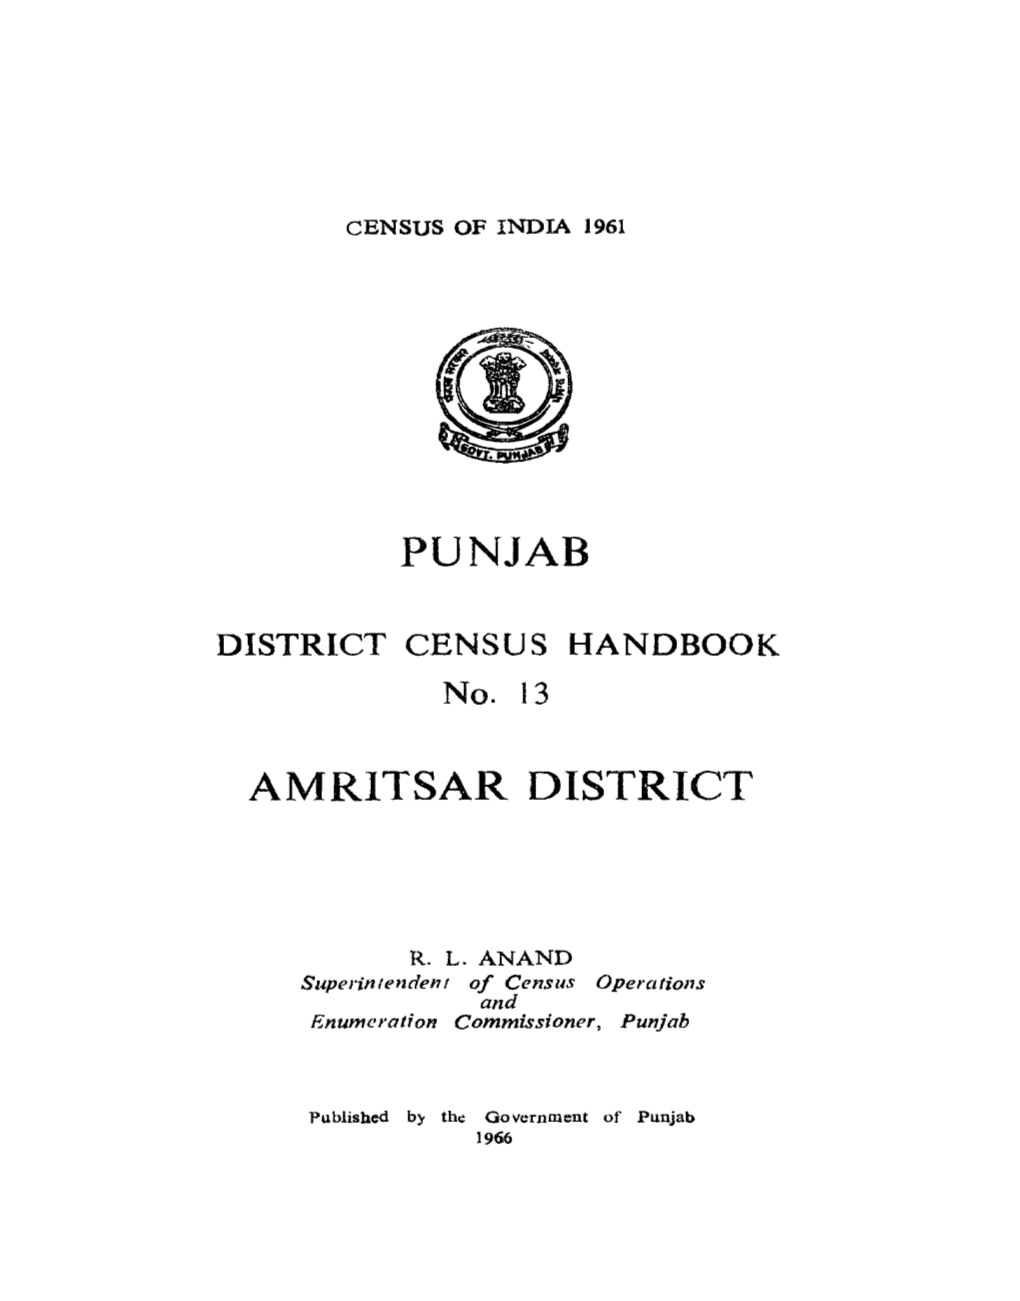 Amritsar District, No-13, Punjab